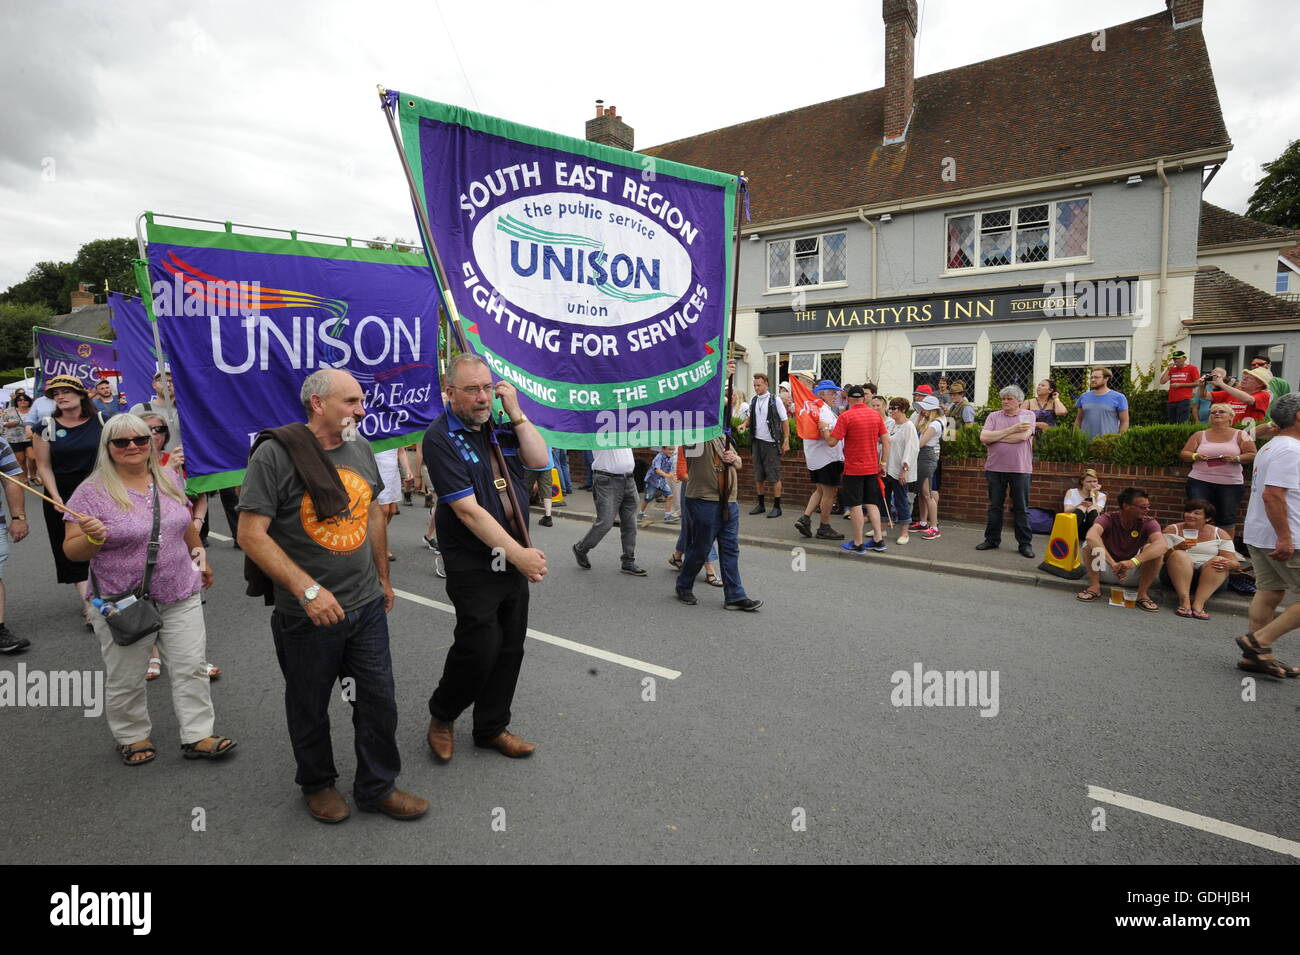 Martiri Tolpuddle Rally, Dorset, Regno Unito. 17 luglio 2016. La parata passa i martiri Inn. Foto di Graham Hunt/Alamy Live News. Foto Stock